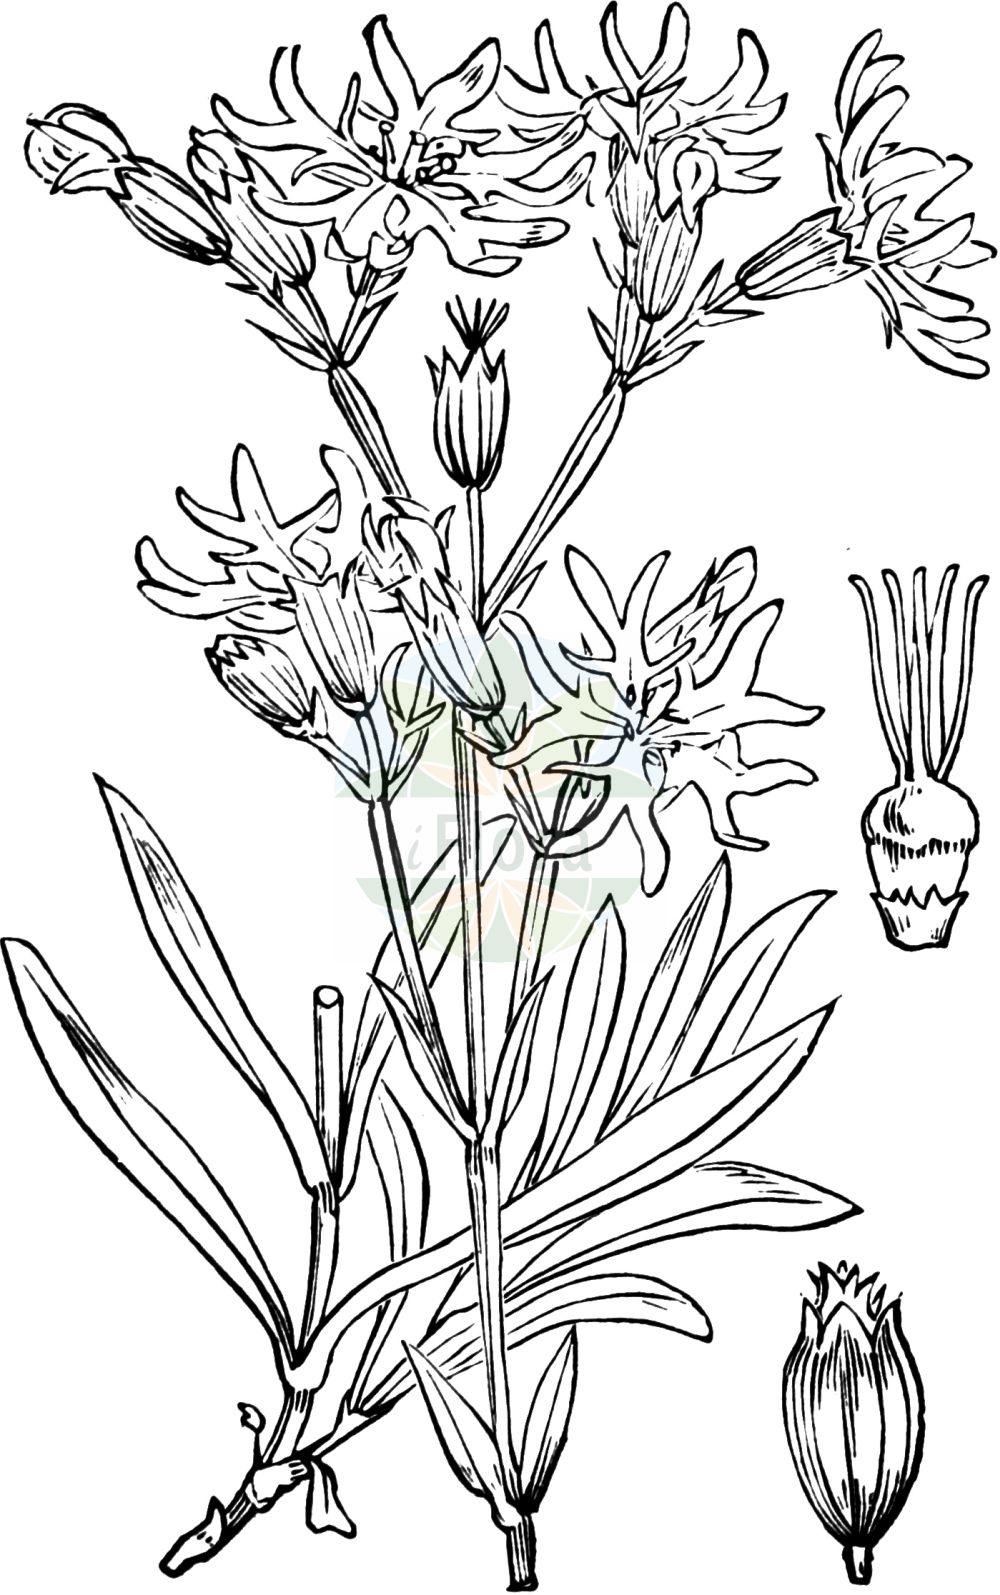 Historische Abbildung von Silene flos-cuculi (Kuckucks-Lichtnelke - Ragged-Robin). Das Bild zeigt Blatt, Bluete, Frucht und Same. ---- Historical Drawing of Silene flos-cuculi (Kuckucks-Lichtnelke - Ragged-Robin). The image is showing leaf, flower, fruit and seed.(Silene flos-cuculi,Kuckucks-Lichtnelke,Ragged-Robin,Agrostemma flos-cuculi,Coronaria flos-cuculi,Lychnis cyrilli,Lychnis flos-cuculi,Lychnis flos-cuculi L. subsp.,Silene flos-cuculi,Silene flos-cuculi (L.) Clairv.,Silene flos-cuculi (L.) Greuter,Kuckucks-Lichtnelke,Ragged-Robin,Cuckoo Flower,Meadow Campion,Silene,Leimkraut,Campion,Caryophyllaceae,Nelkengewächse,Pink family,Blatt,Bluete,Frucht,Same,leaf,flower,fruit,seed,Fitch et al. (1880))